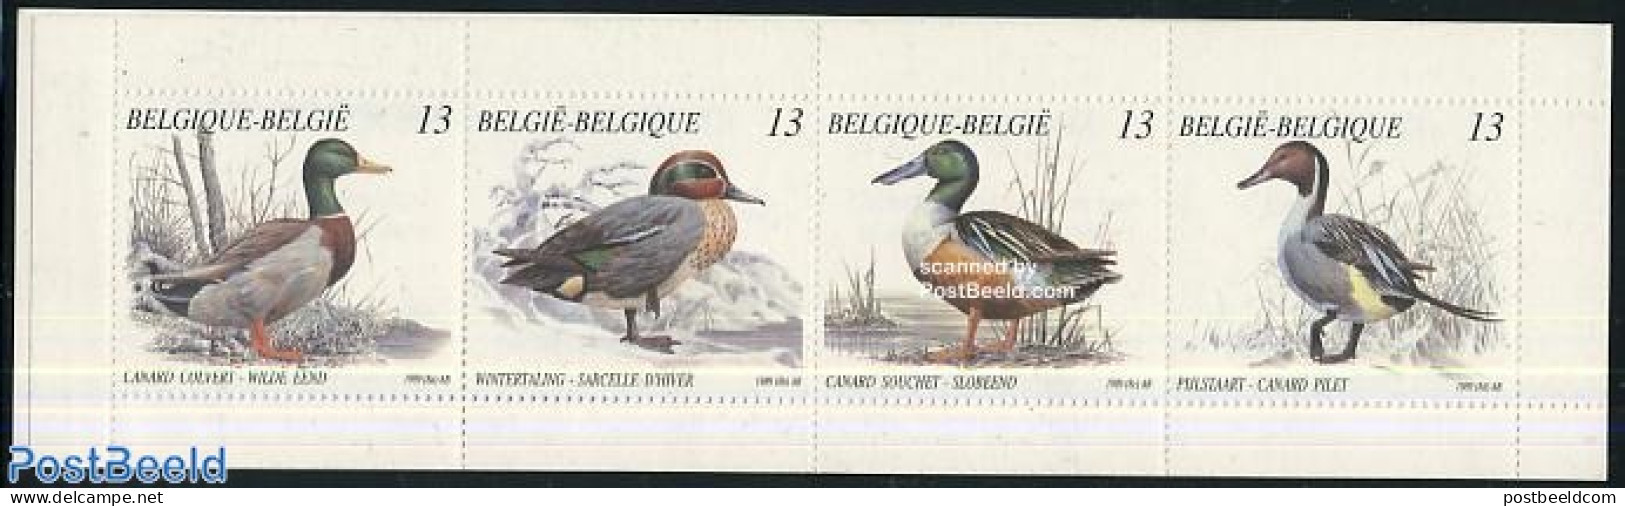 Belgium 1989 Ducks 4v In Booklet, Mint NH, Nature - Birds - Ducks - Stamp Booklets - Ongebruikt